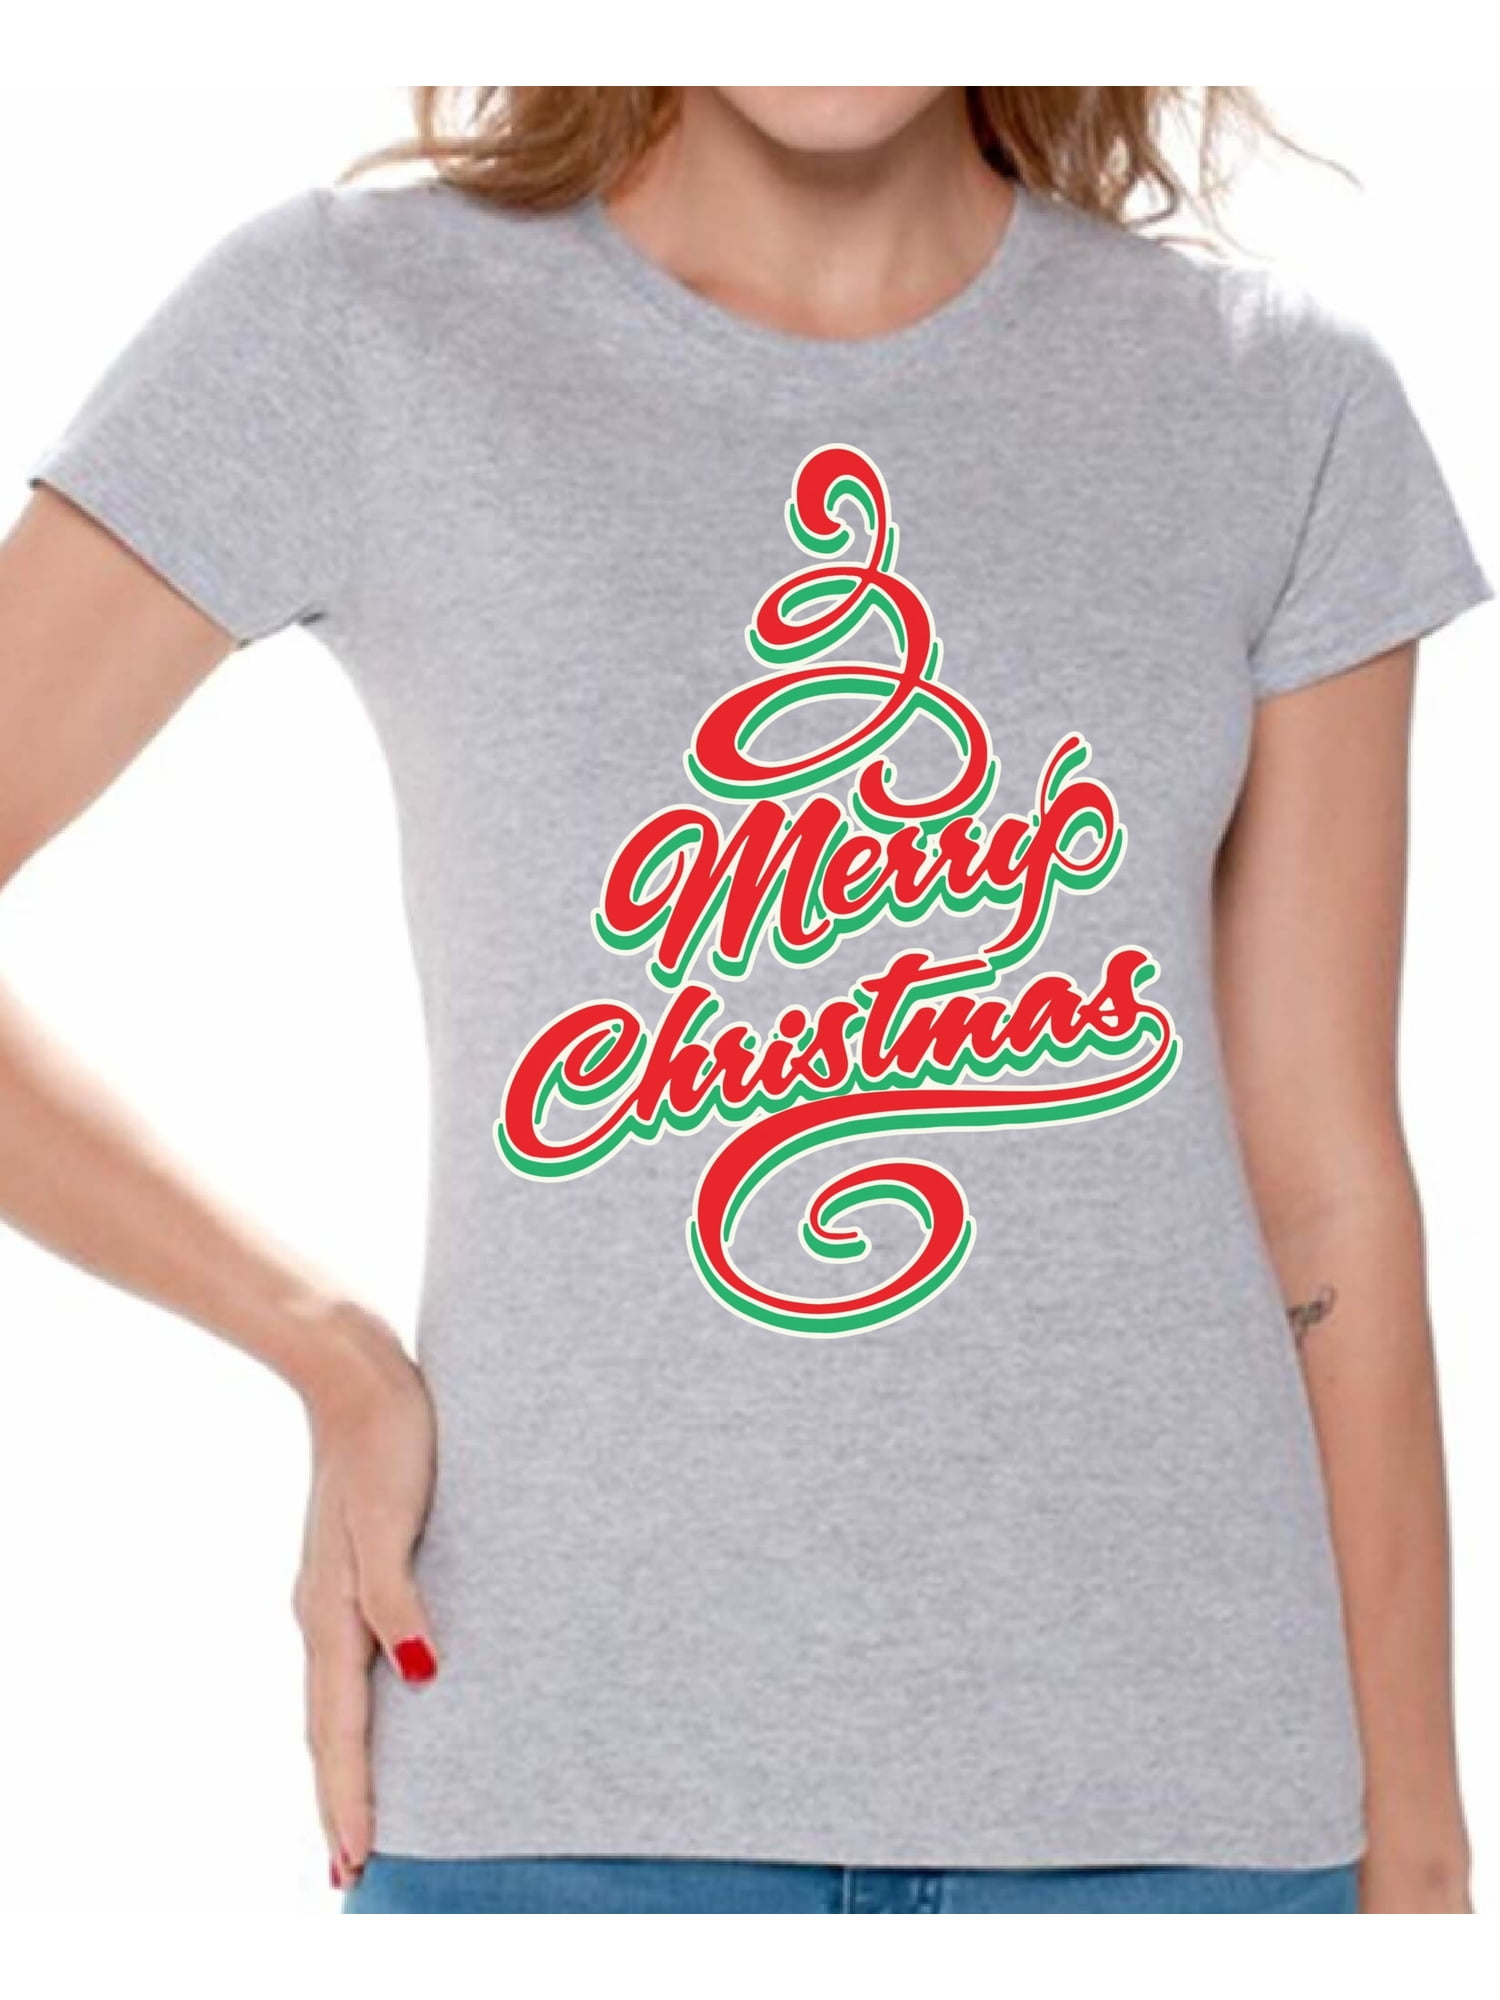 Shirts For Christmas Christmas Shirts for Family,Christmas Tee Santa Shirt Hot Coco Shirt Coco Christmas Jumpers T-shirt,Christmas Shirt